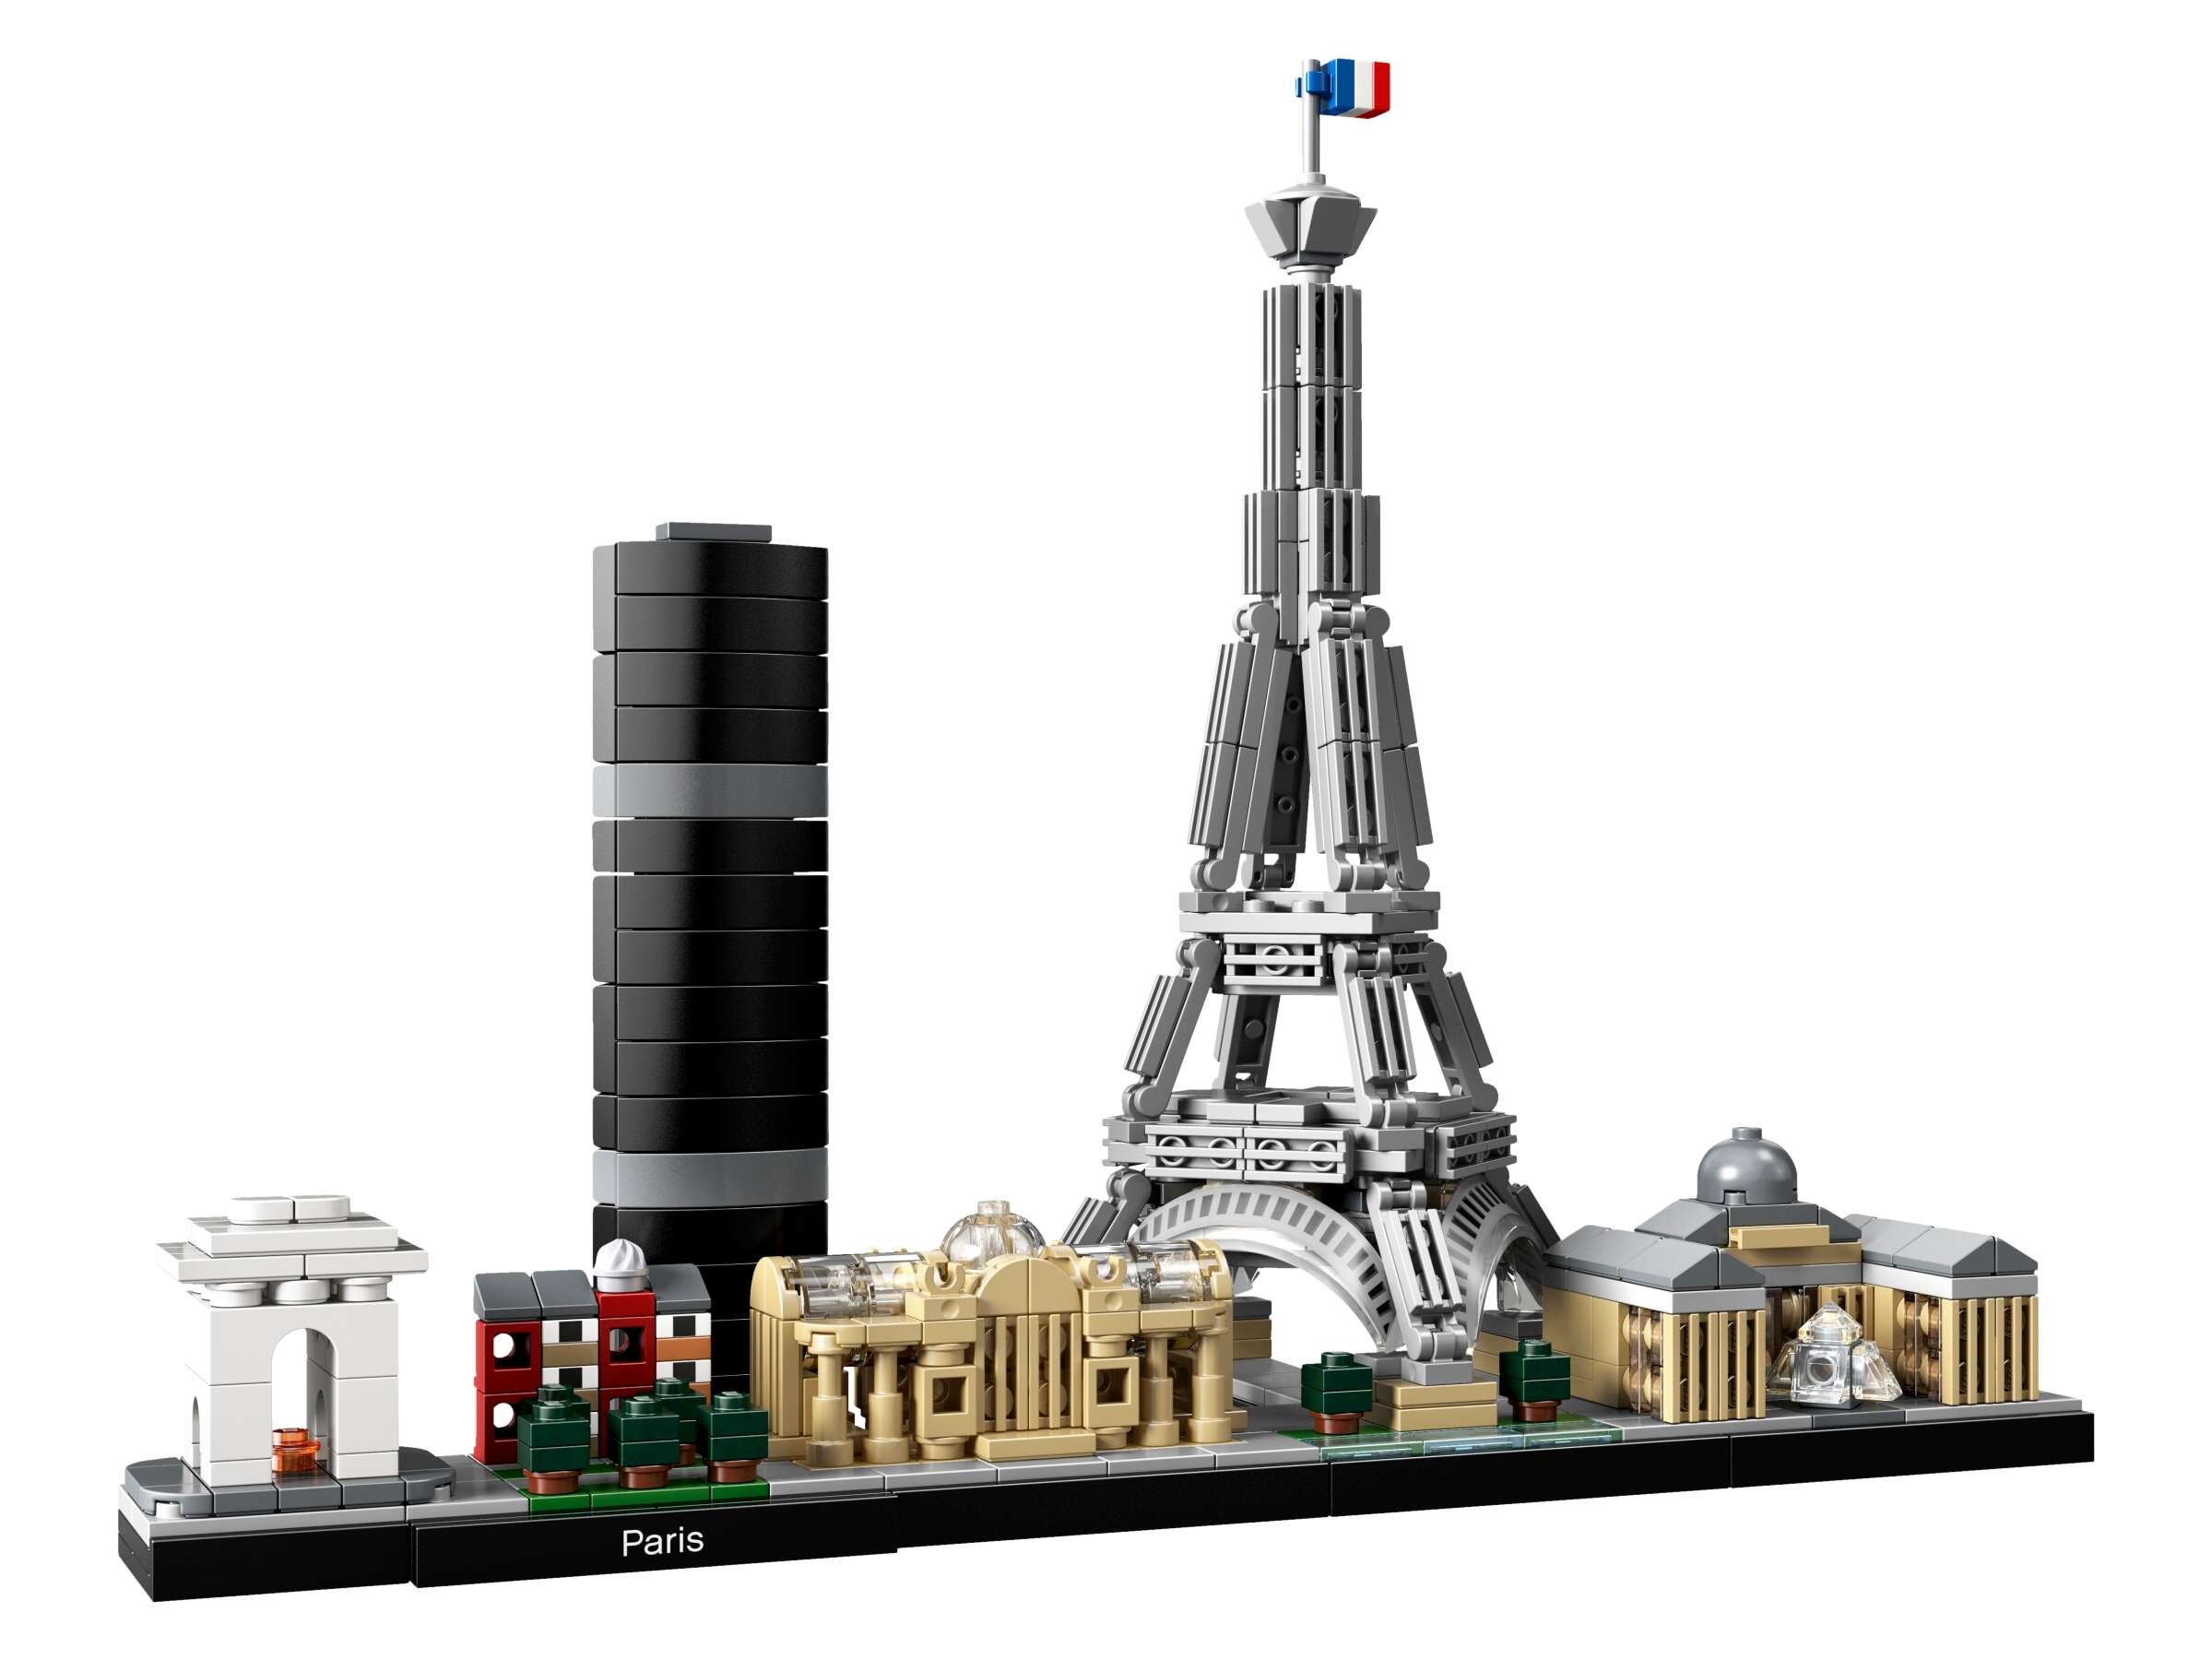 LEGO 21044 Architecture Paris, Modellbausatz mit Eiffelturm und Louvre-Modell